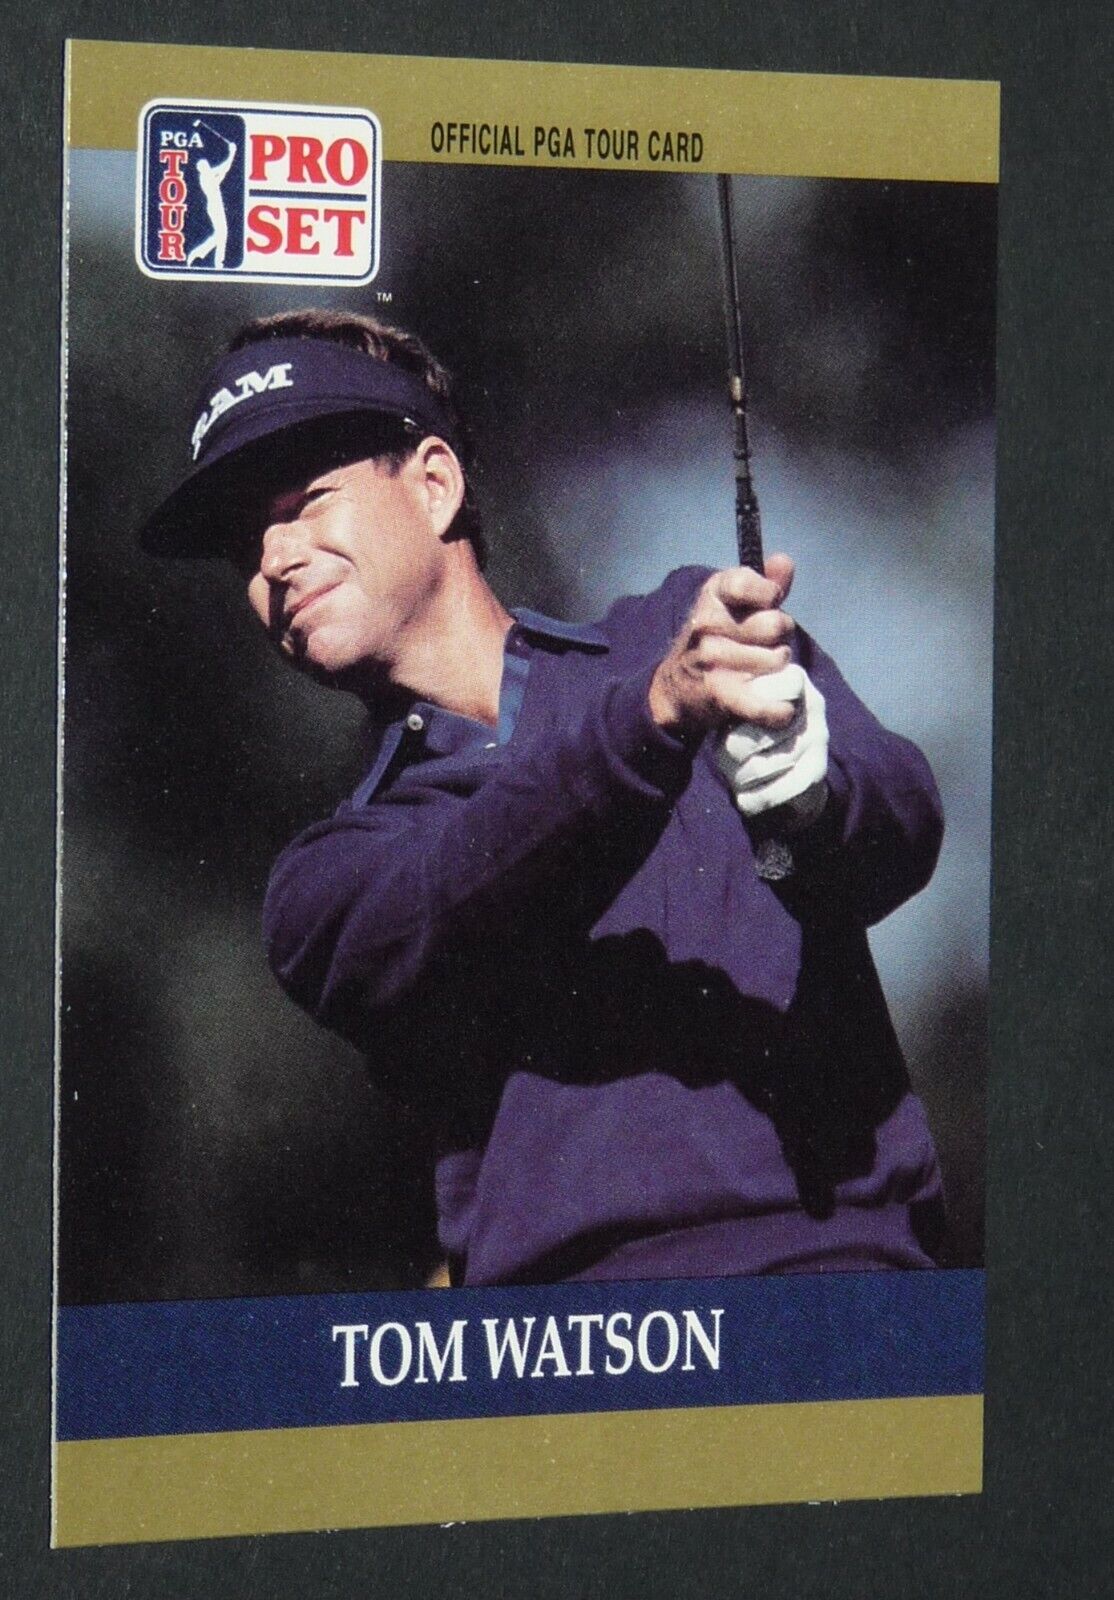 #4 TOM WATSON USA PRO SET CARD GOLF 1990 PGA TOUR GOLFING GOLFER USPGA